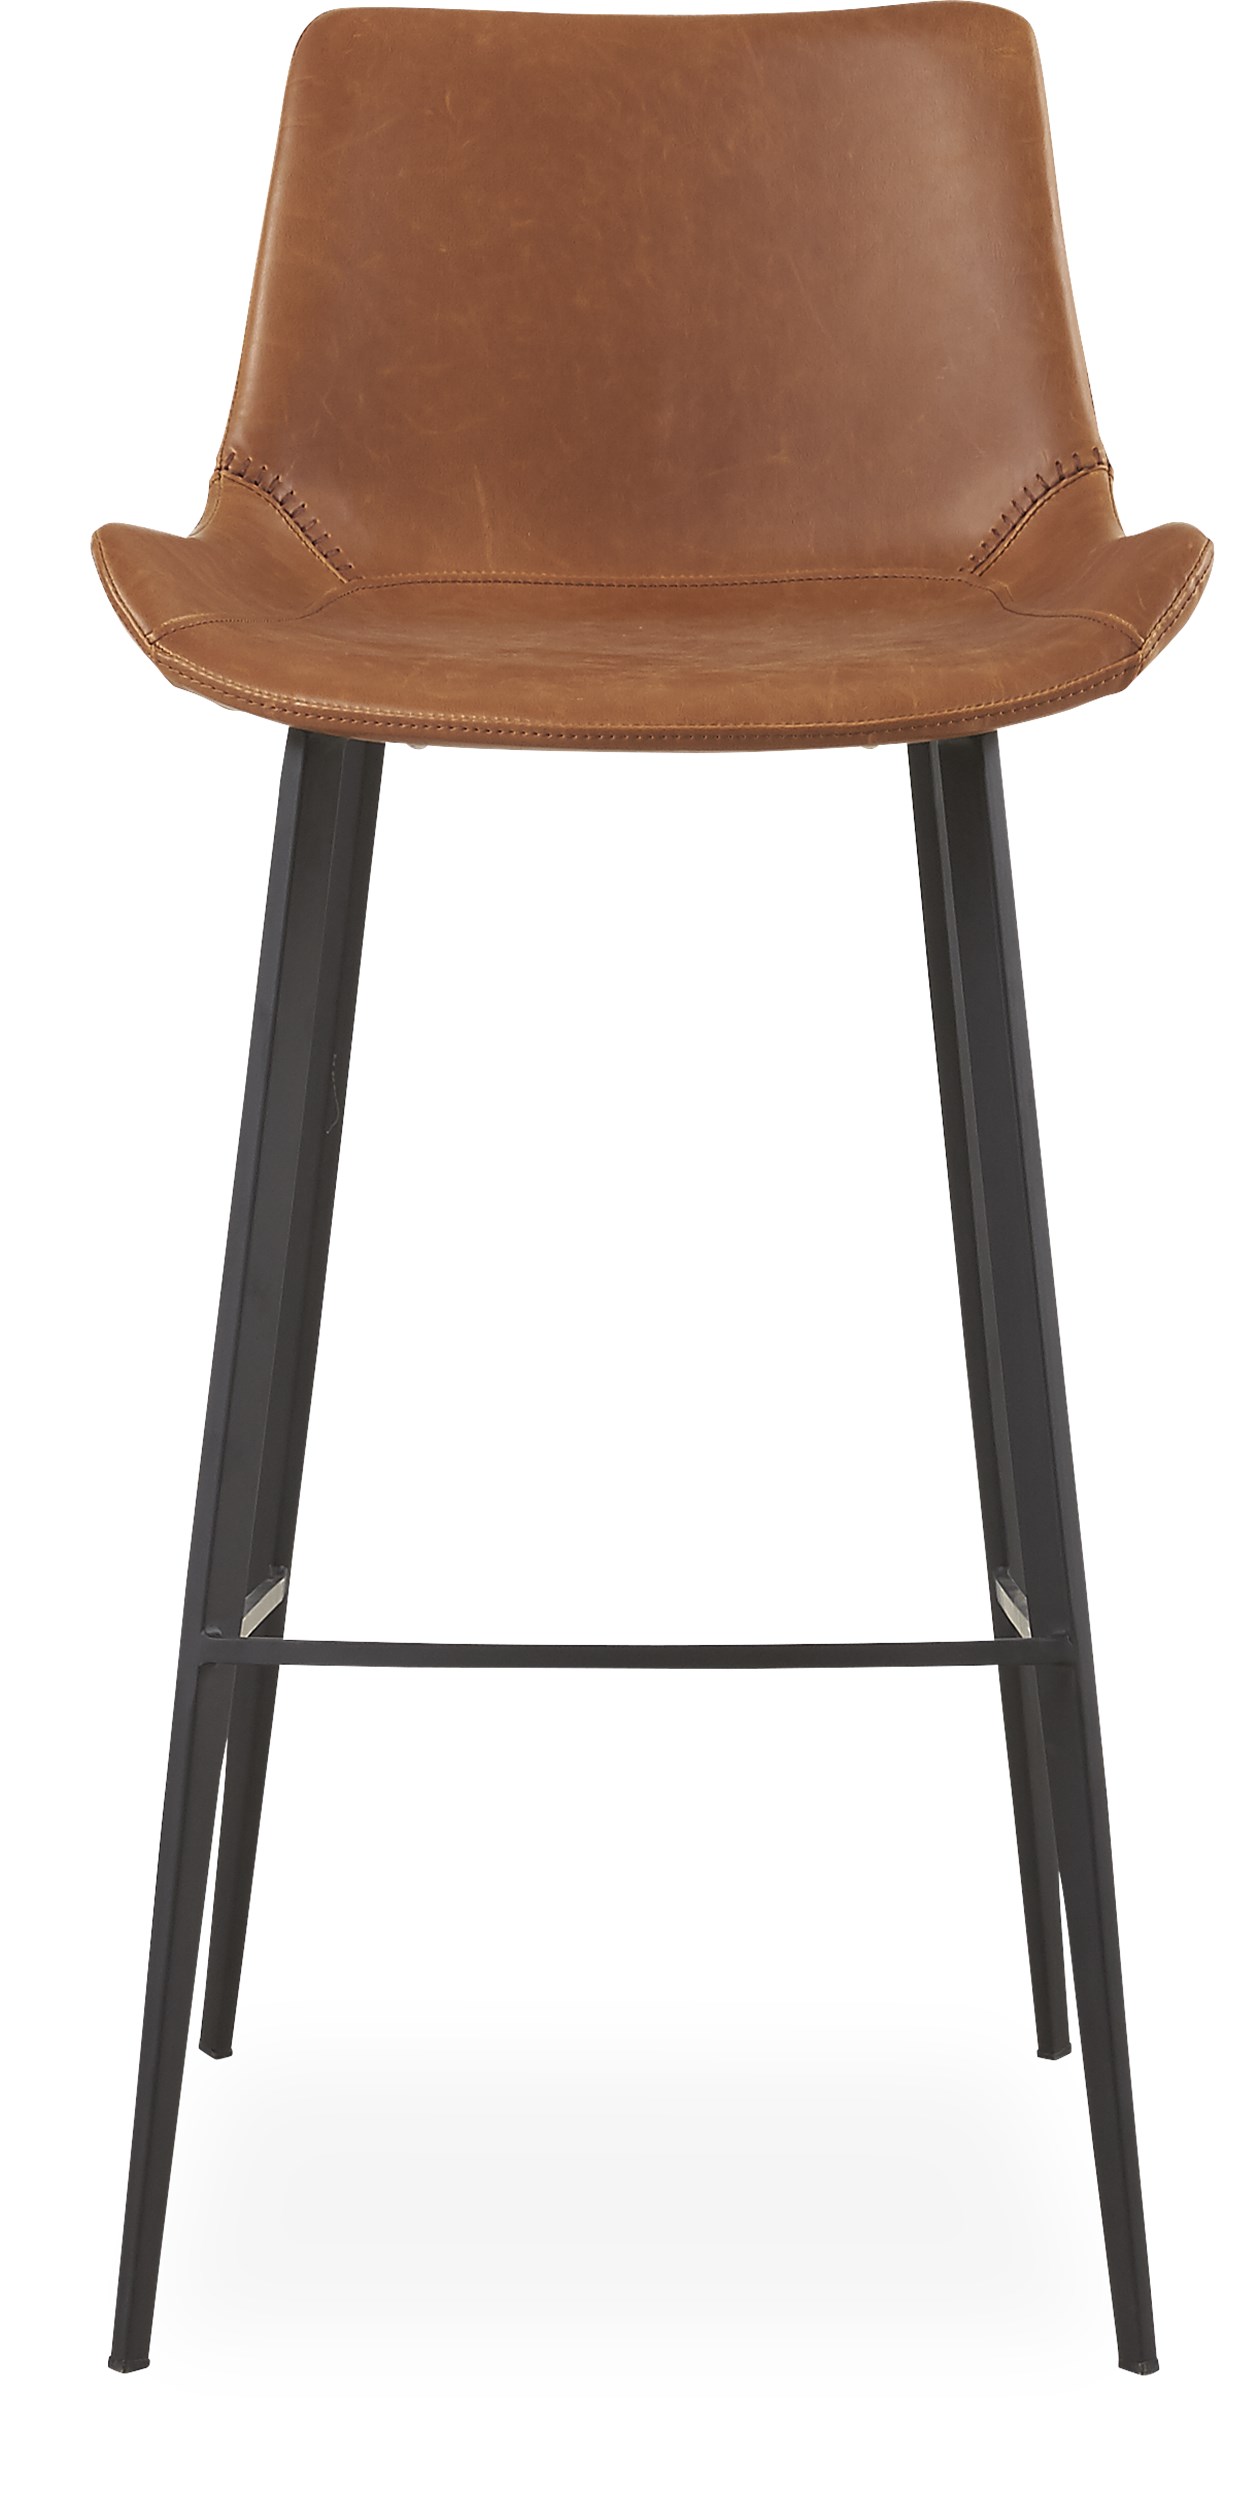 Hype Barstol - Sæde i brunt kunstlæder og ben i sortlakeret metal